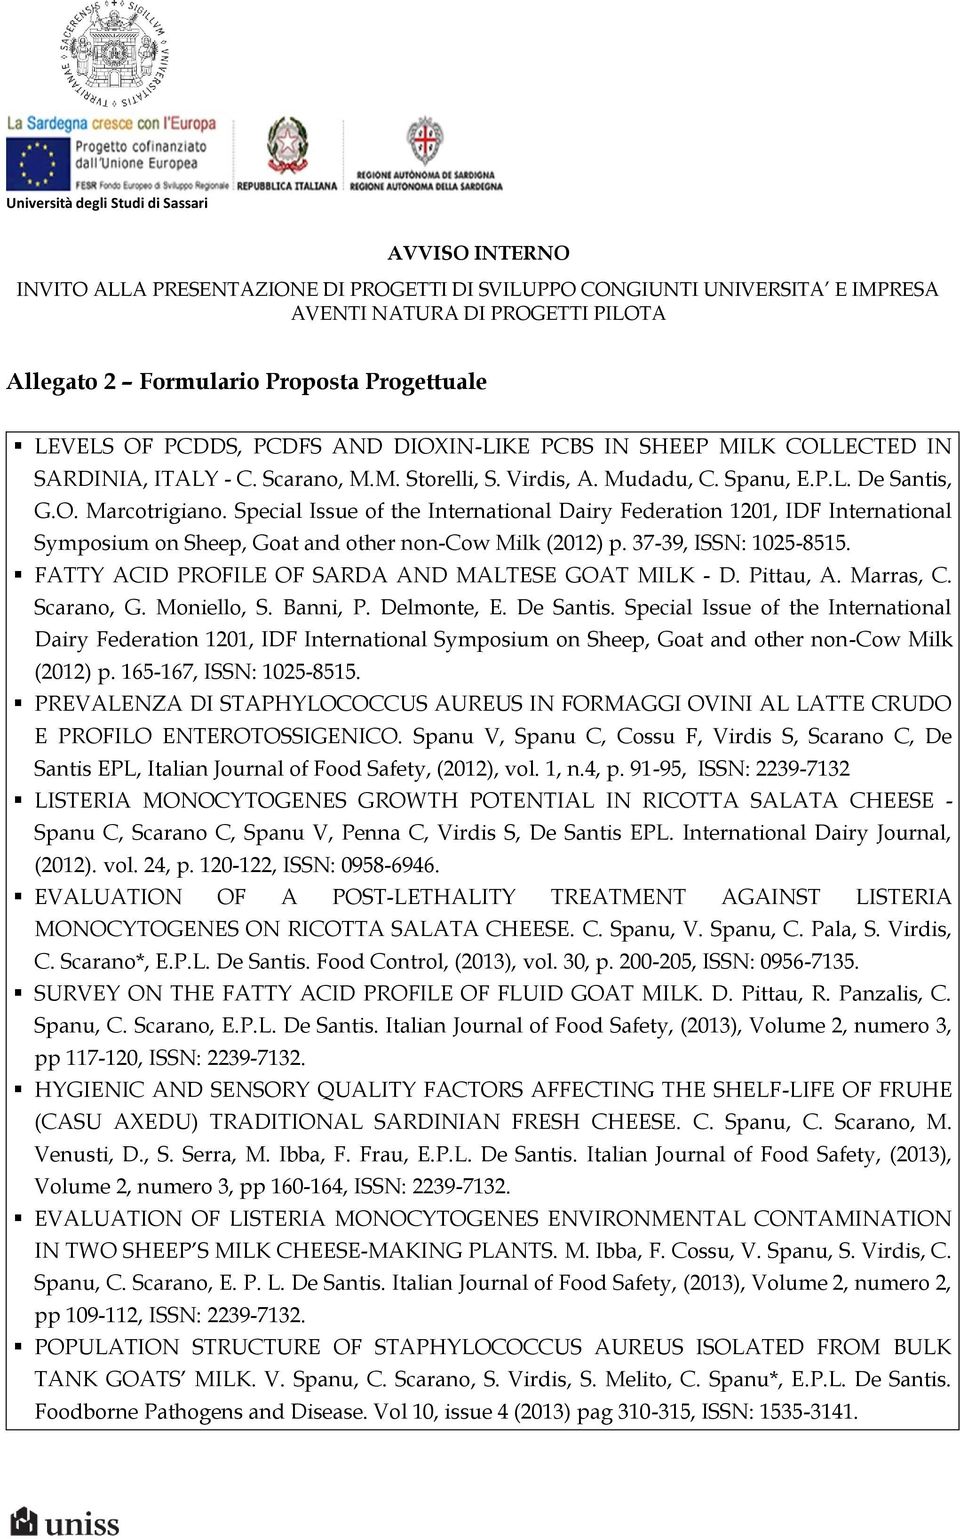 FATTY ACID PROFILE OF SARDA AND MALTESE GOAT MILK - D. Pittau, A. Marras, C. Scarano, G. Moniello, S. Banni, P. Delmonte, E. De Santis.